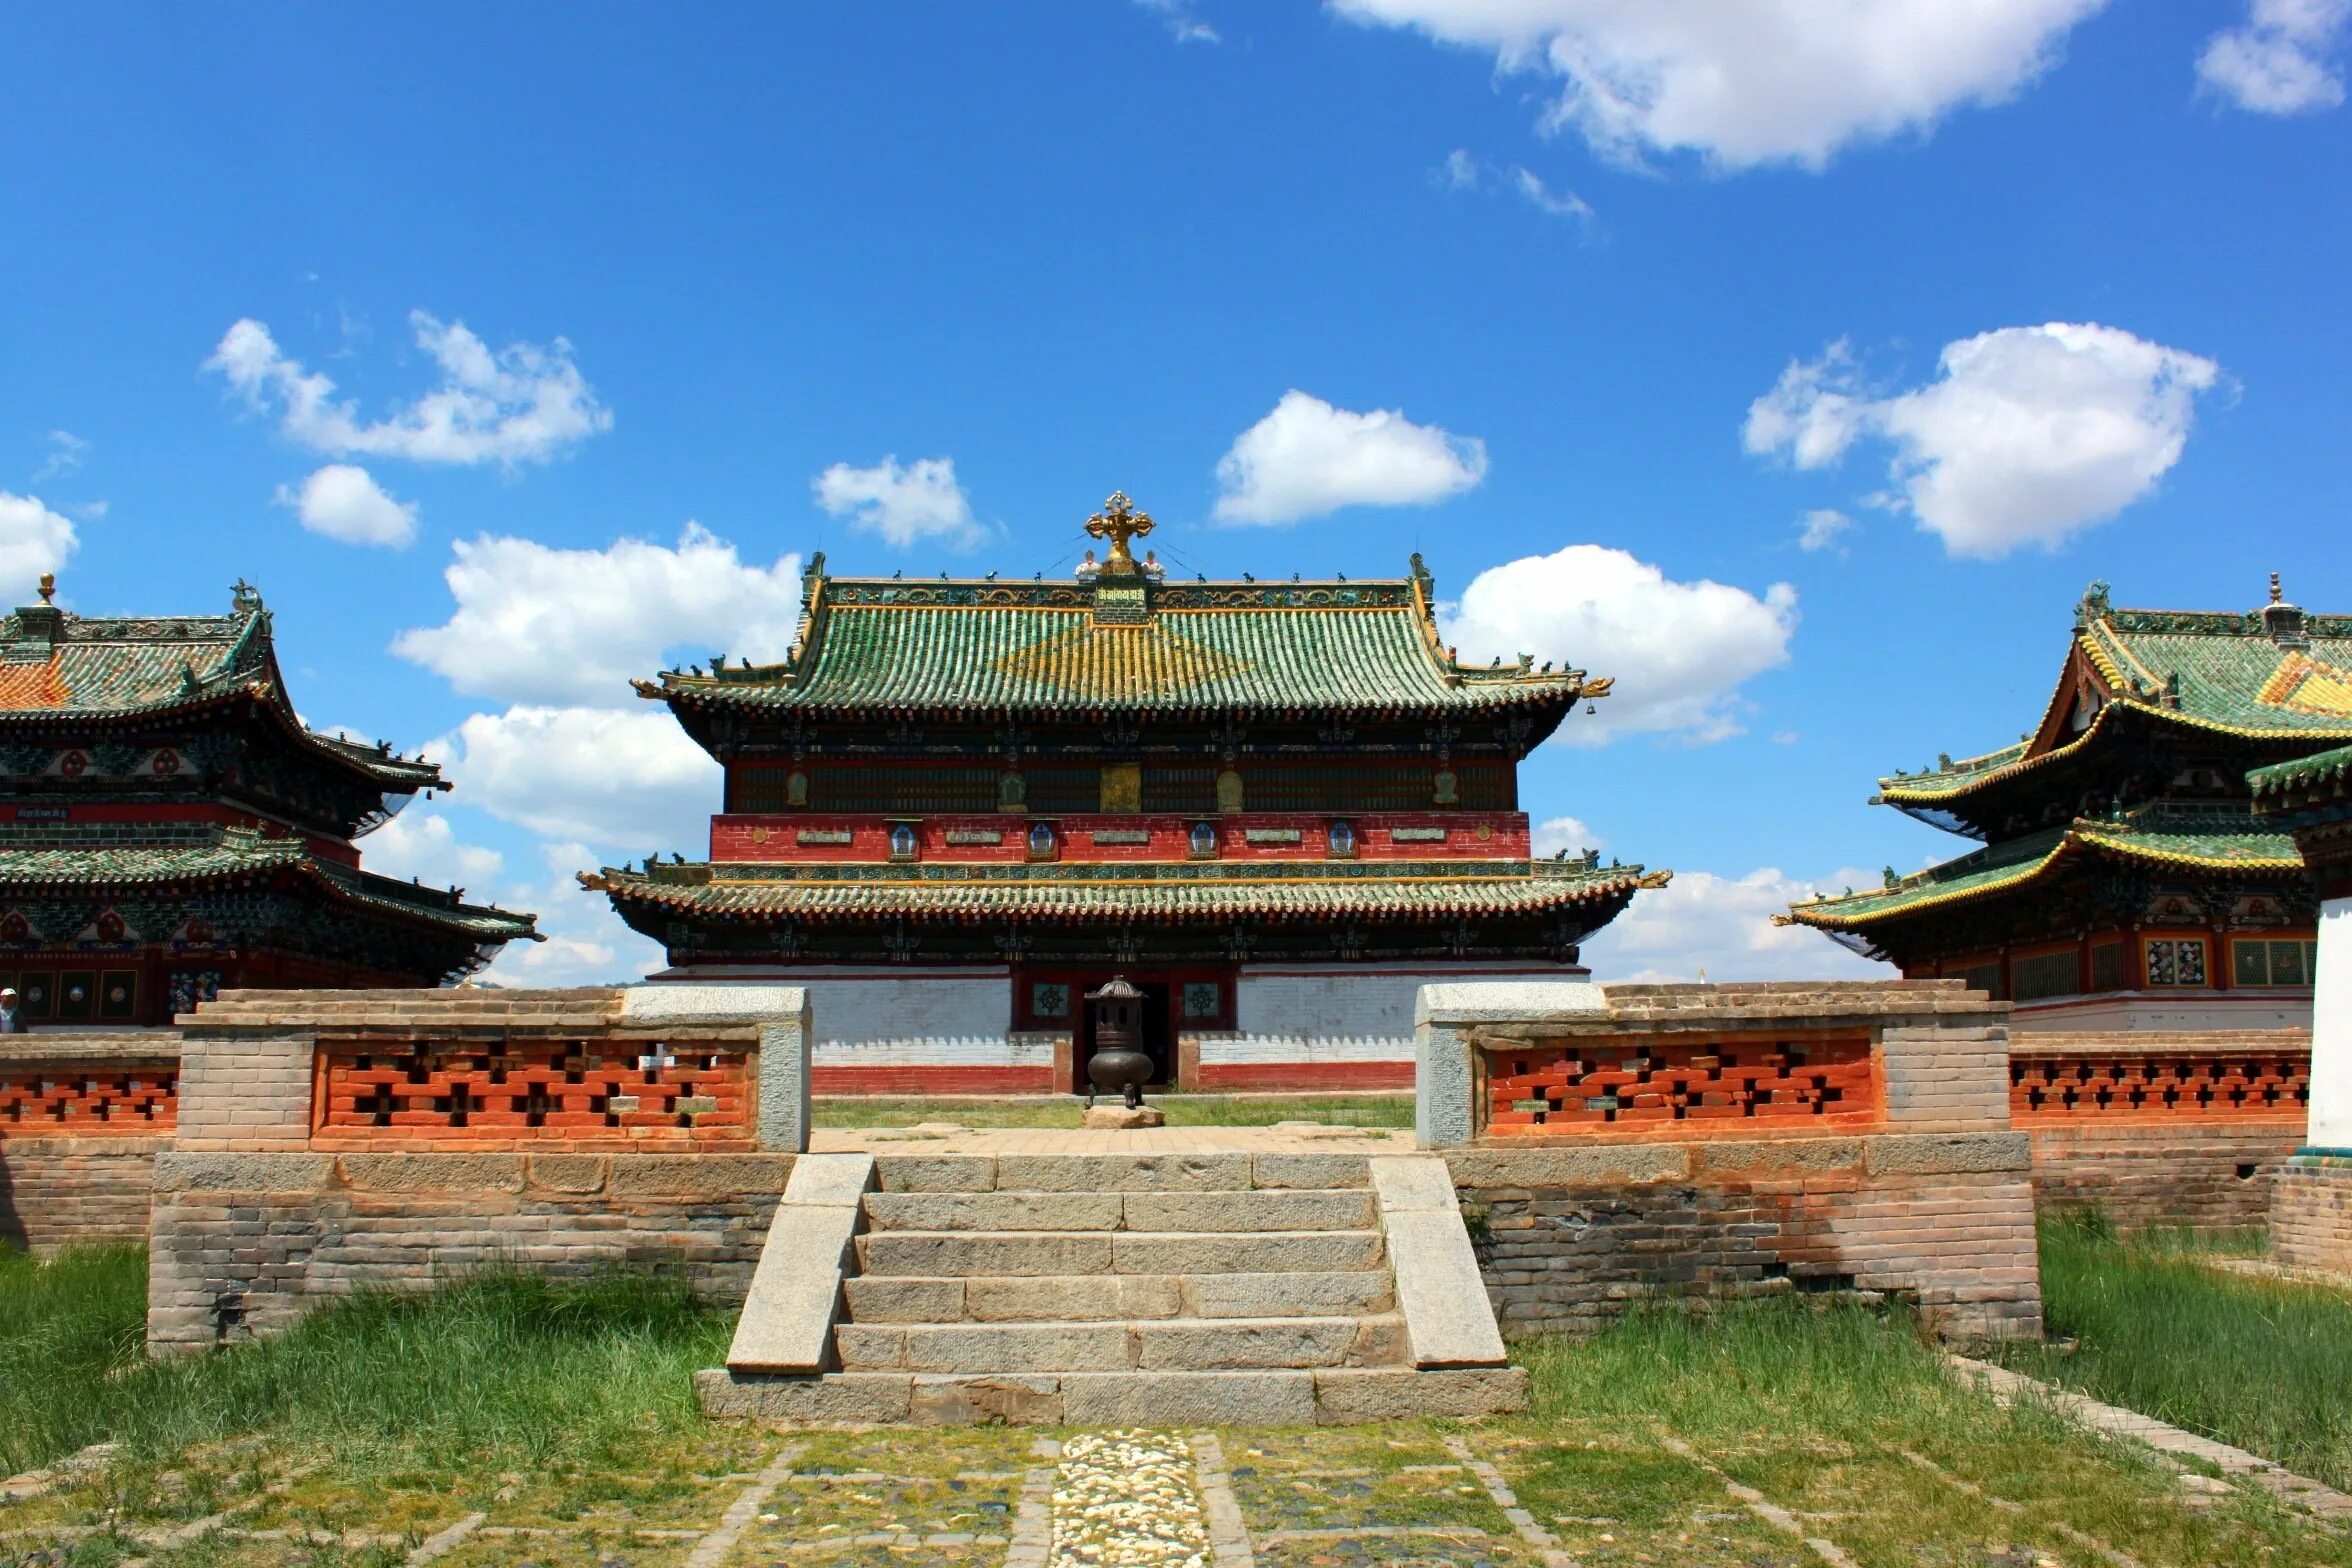 Столица улан батор страна. Дворец Богдо-гэгэна Улан-Батор. Монастырь Эрдэнэ-зуу. Эрдэни-дзу Монголия. Монголия Улан Батор достопримечательности.